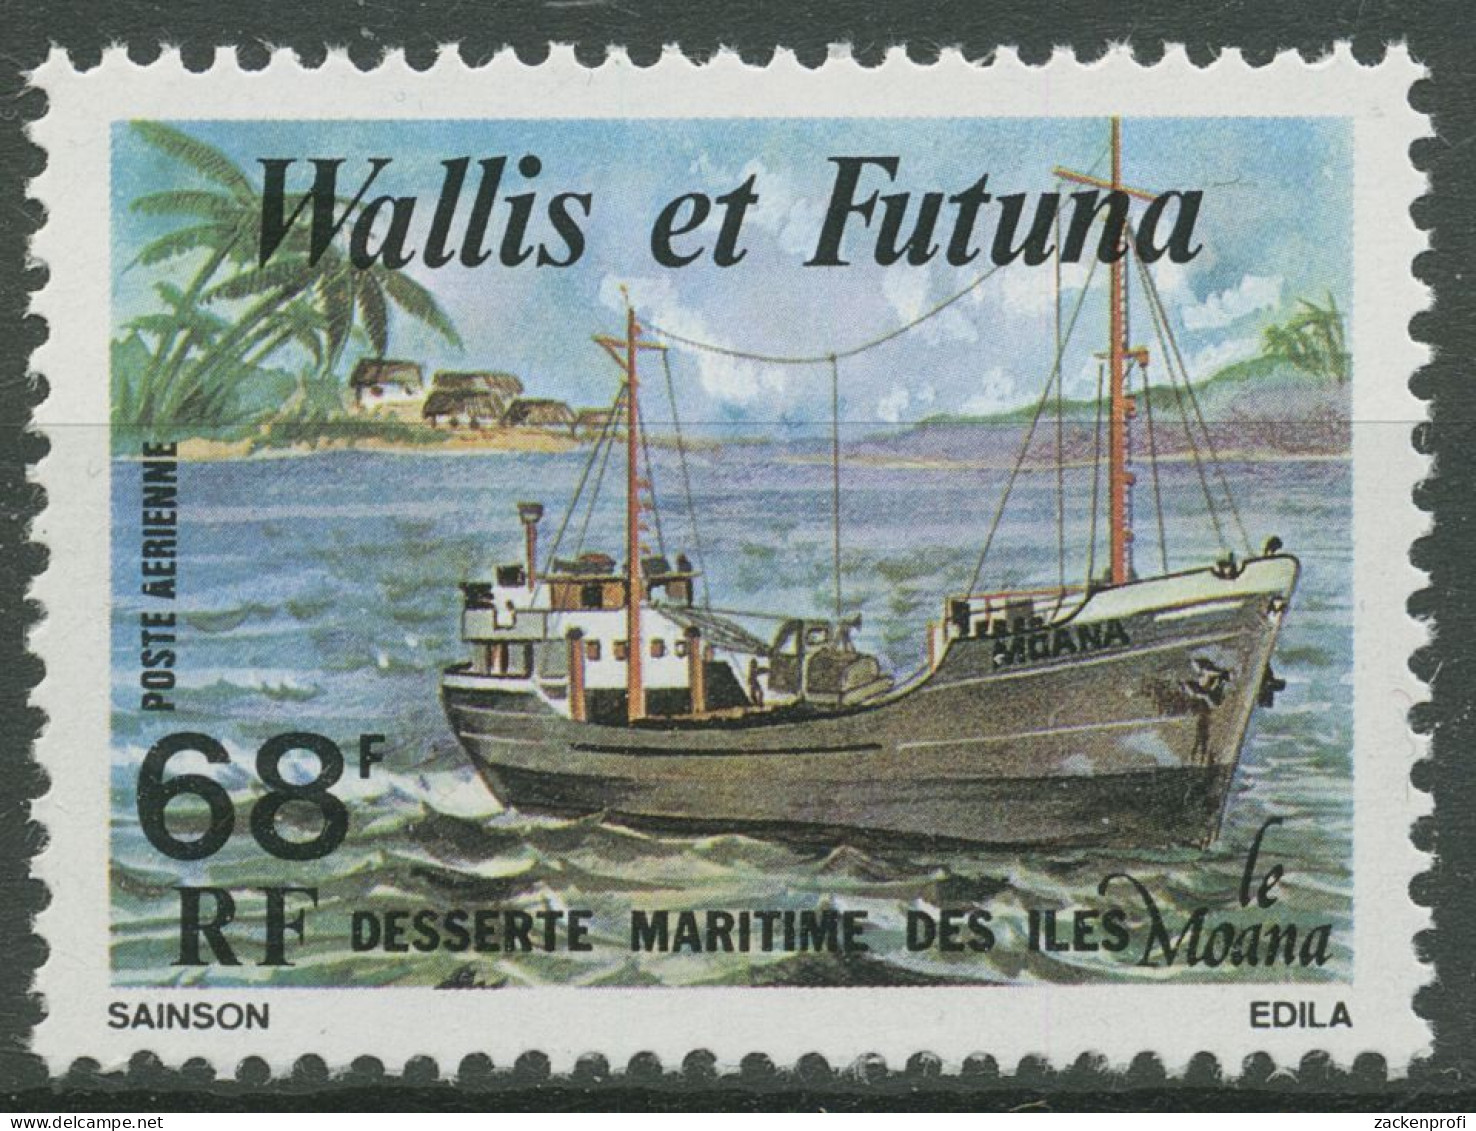 Wallis Und Futuna 1979 Frachtschiff Moana 329 Postfrisch - Unused Stamps